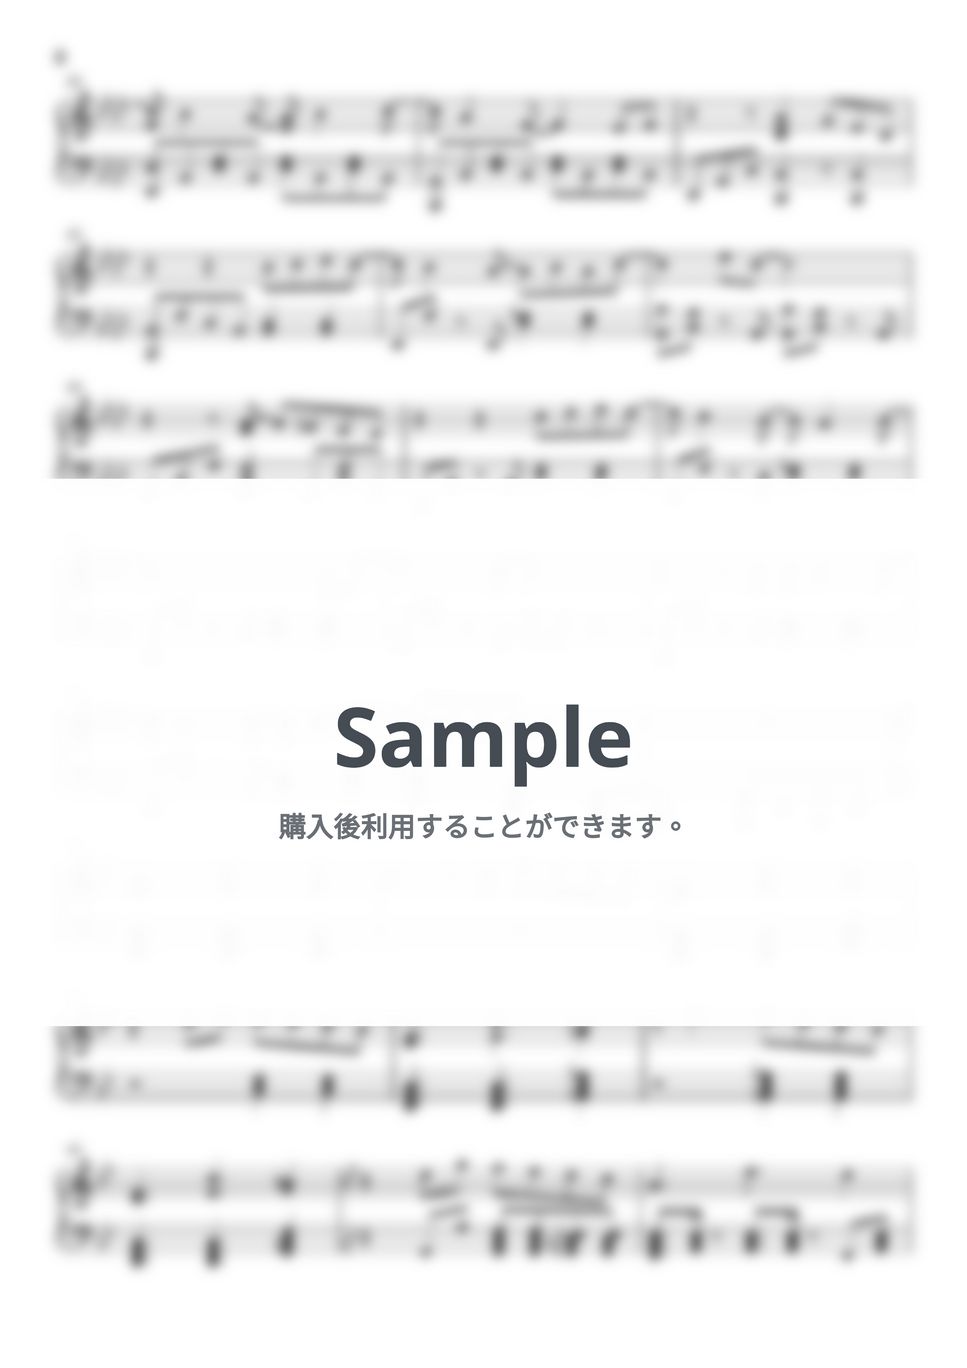 藤井風 - 燃えよ (ピアノ上級ソロ) by pianon